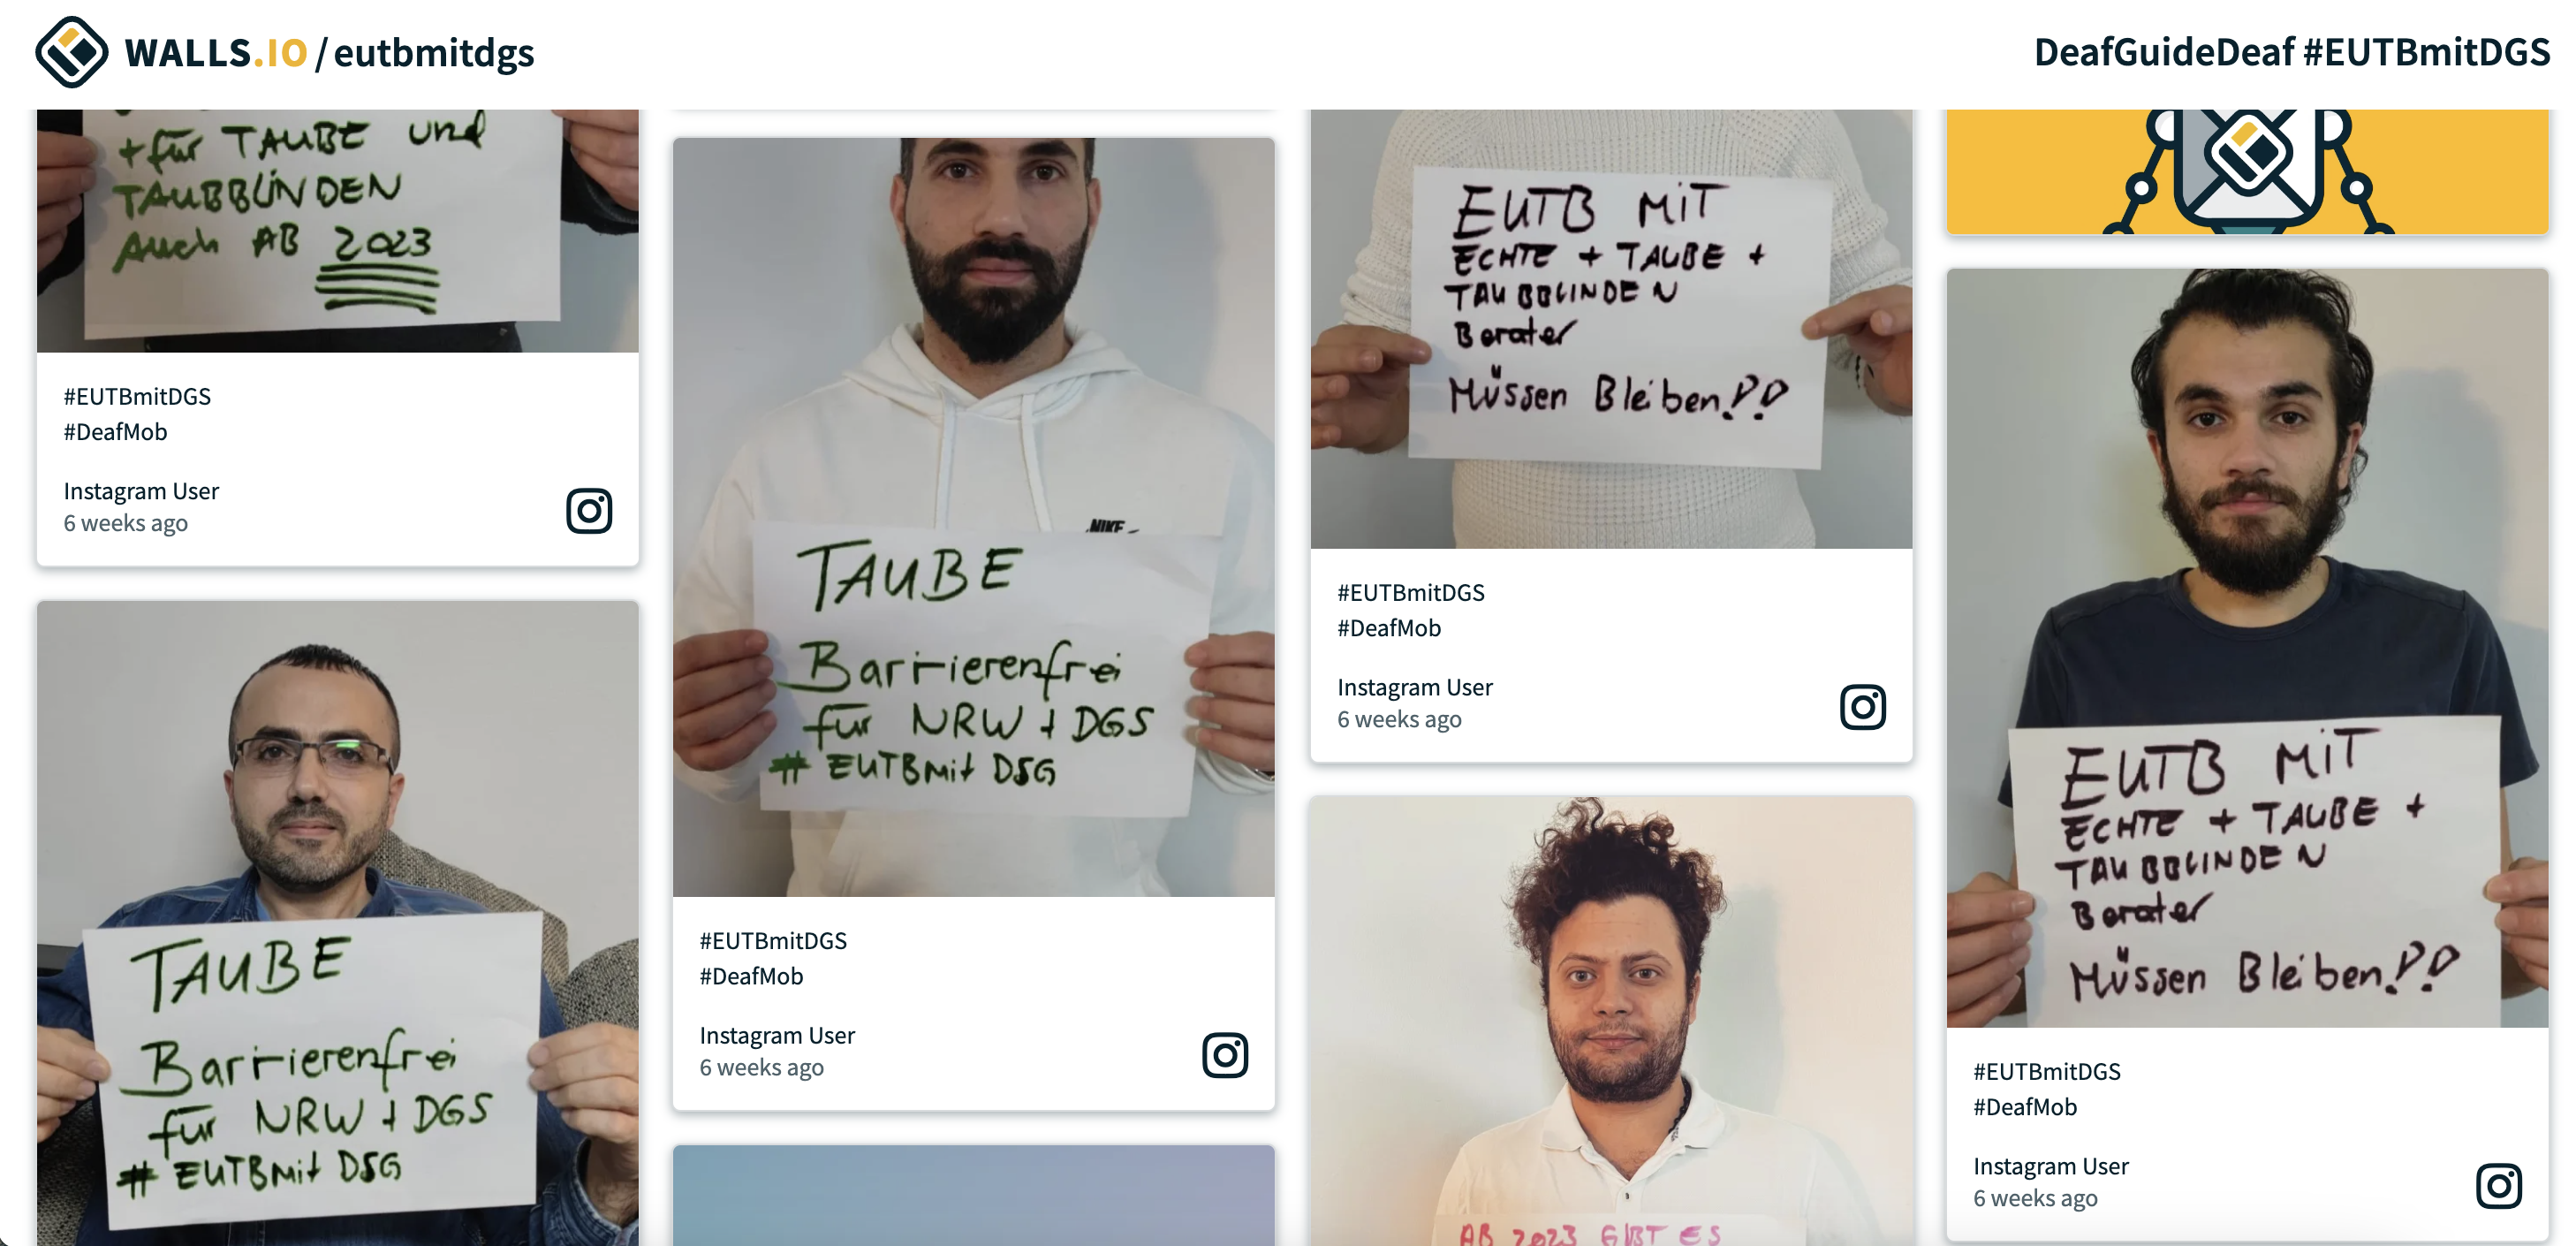 Eine Collage von mehreren Personen, die auf ihren Social Media Kanälen ein Schild mit der Aufschrift "Taube barrierefrei für NRW und DGS" hochhalten.